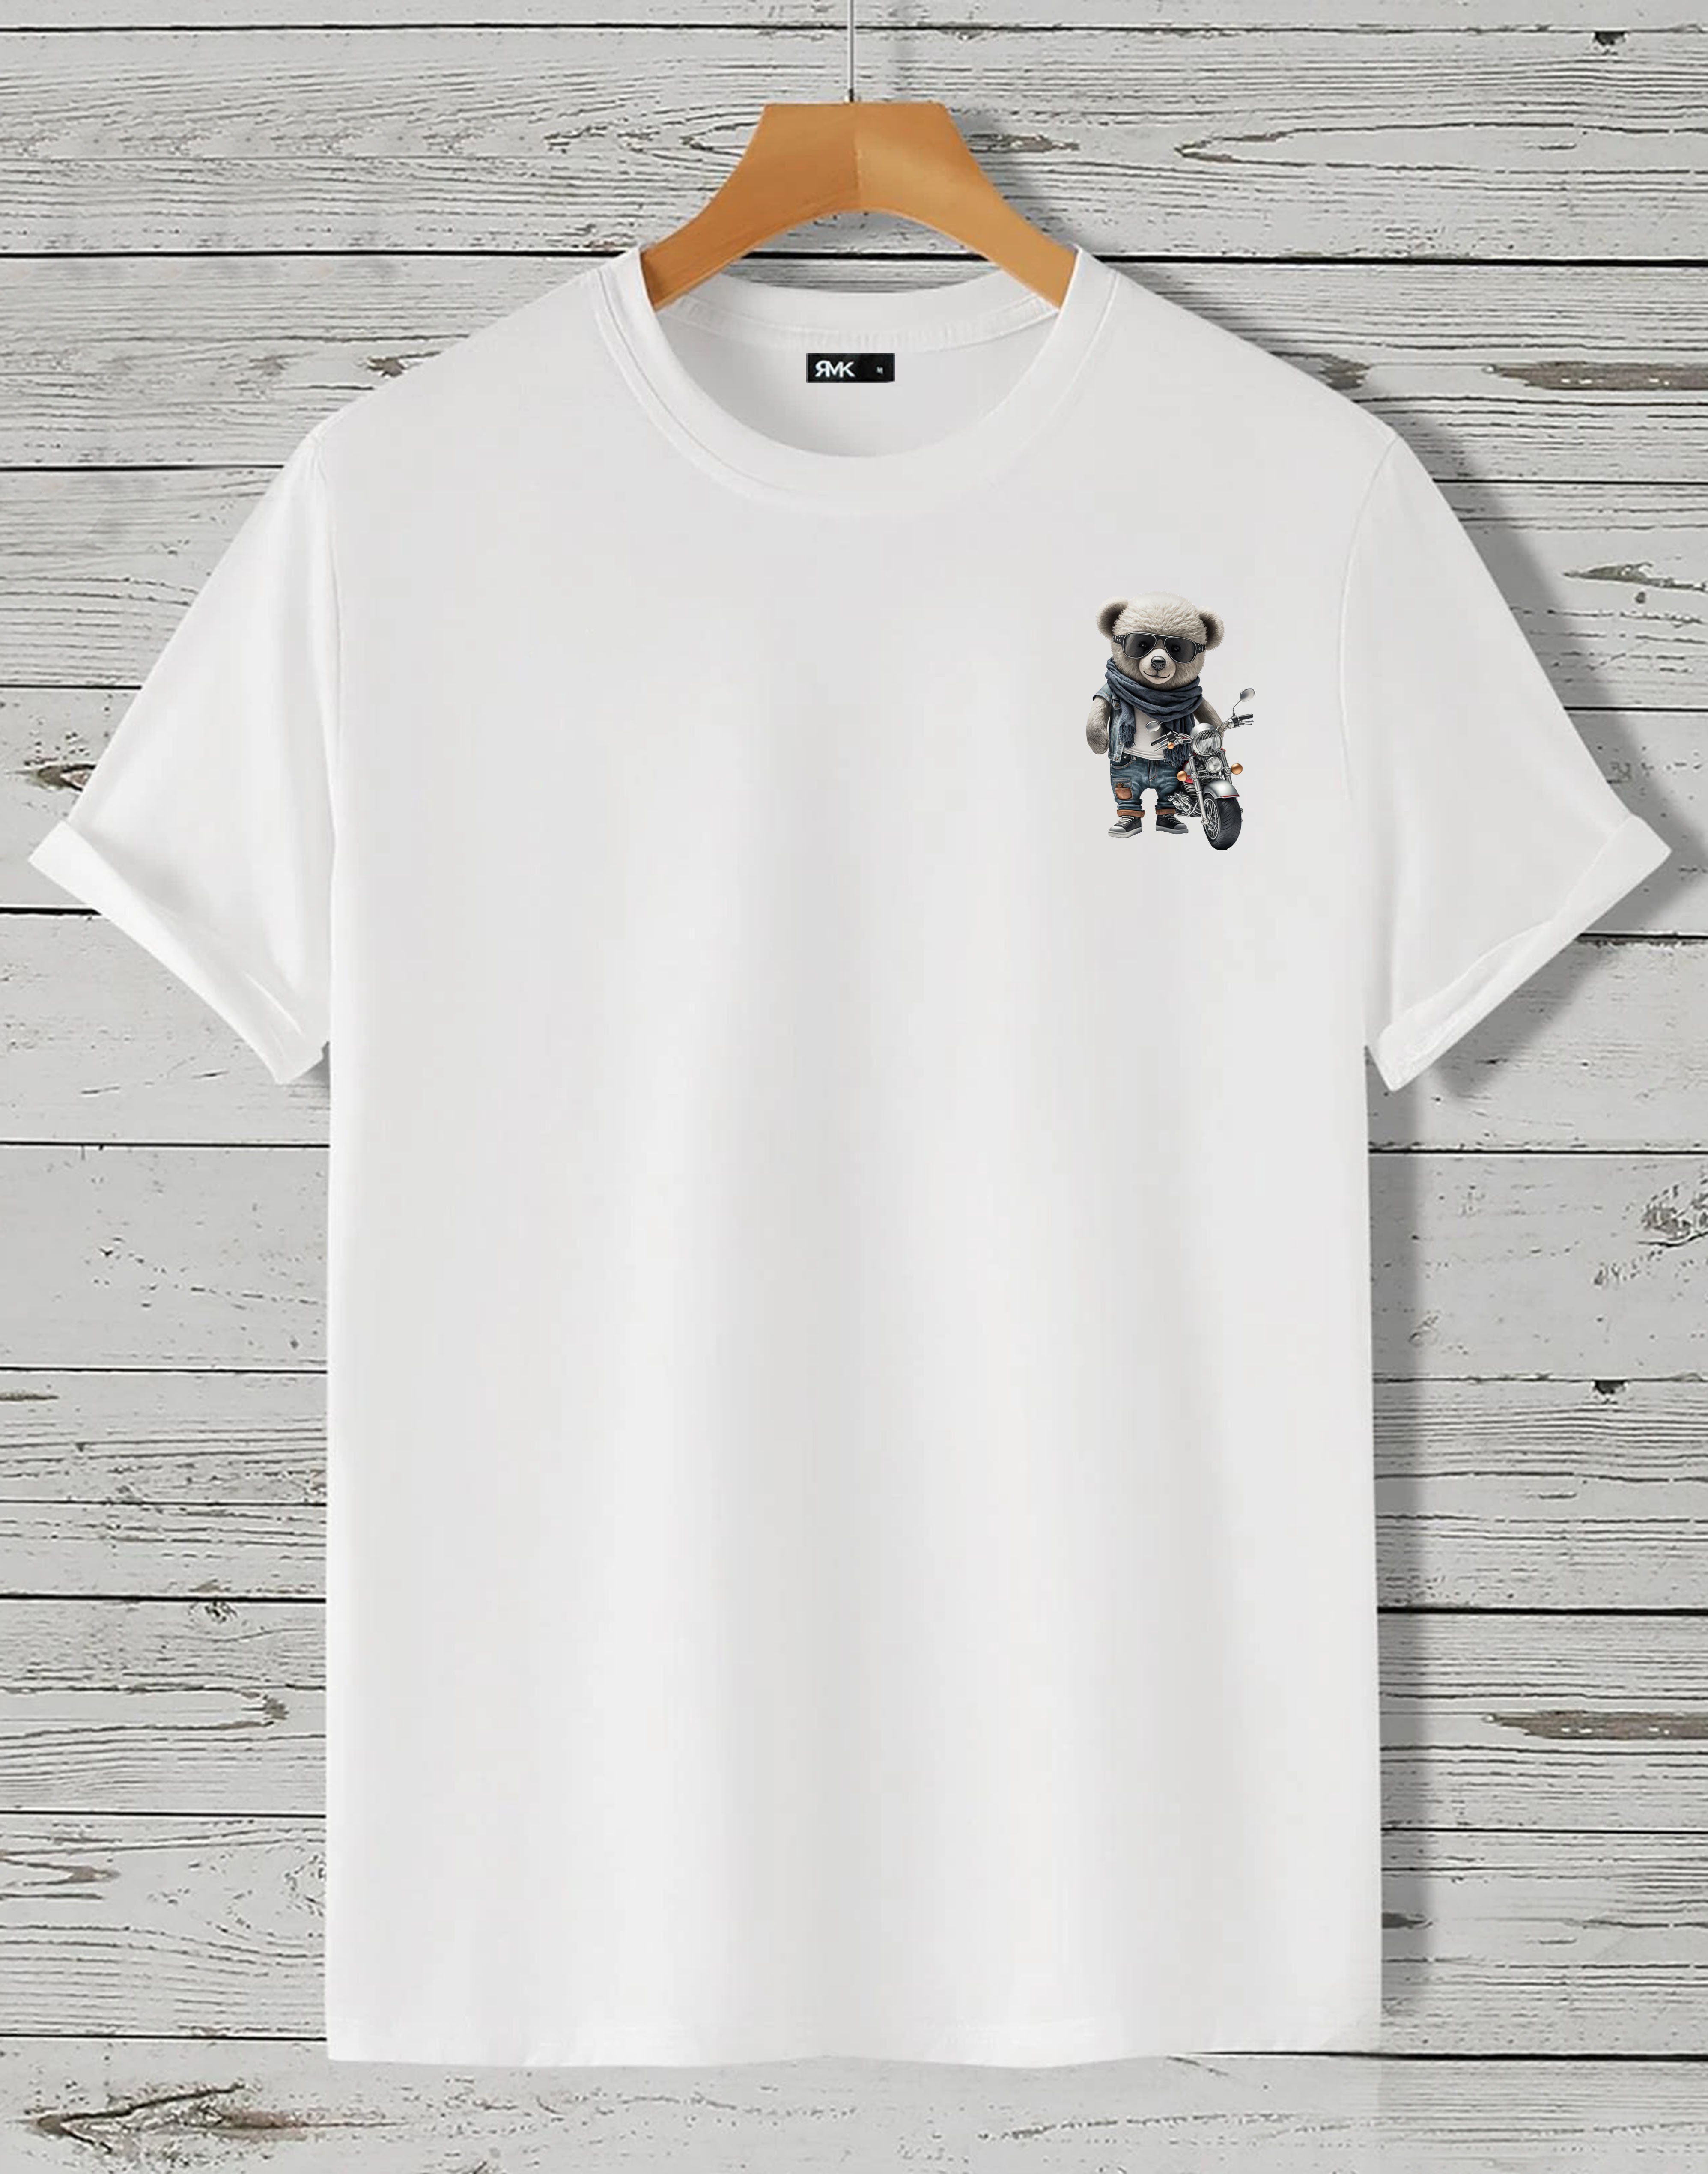 RMK T-Shirt Herren T-Shirt Rundhals mit Teddybär Motorrad Weiß (klein) | T-Shirts